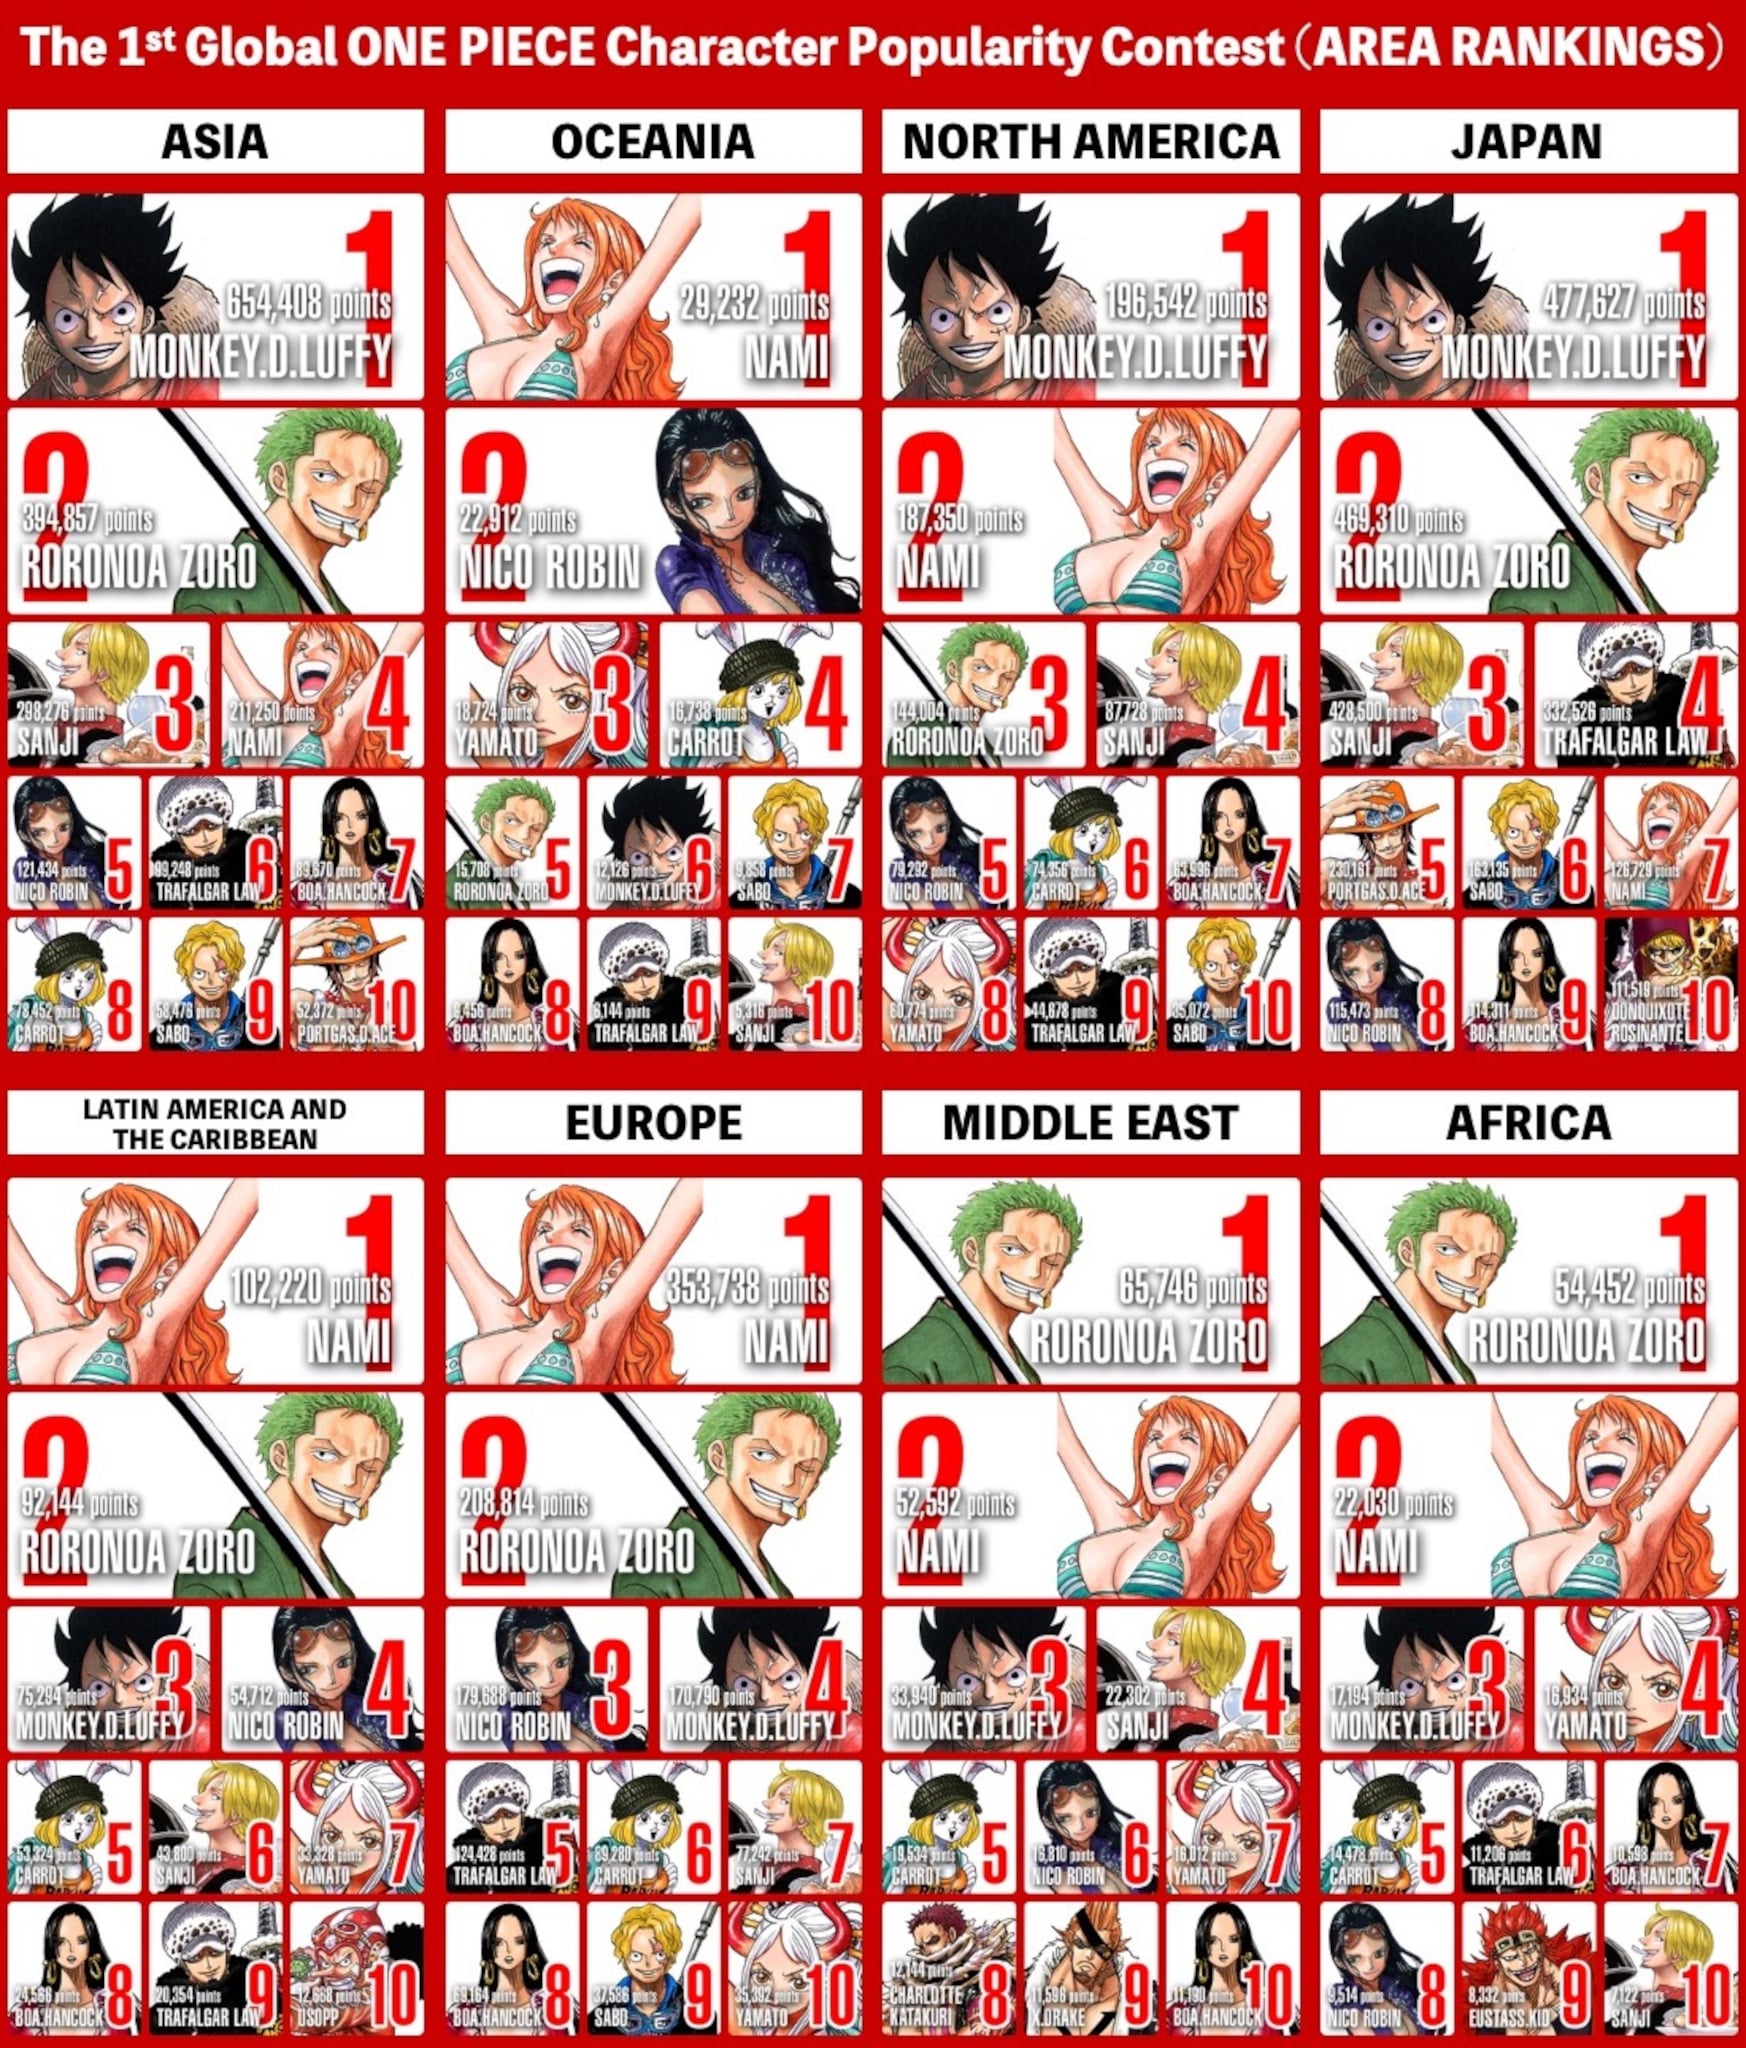 Top 10 des personnages préférés des fans de One Piece dans les différentes régions du monde